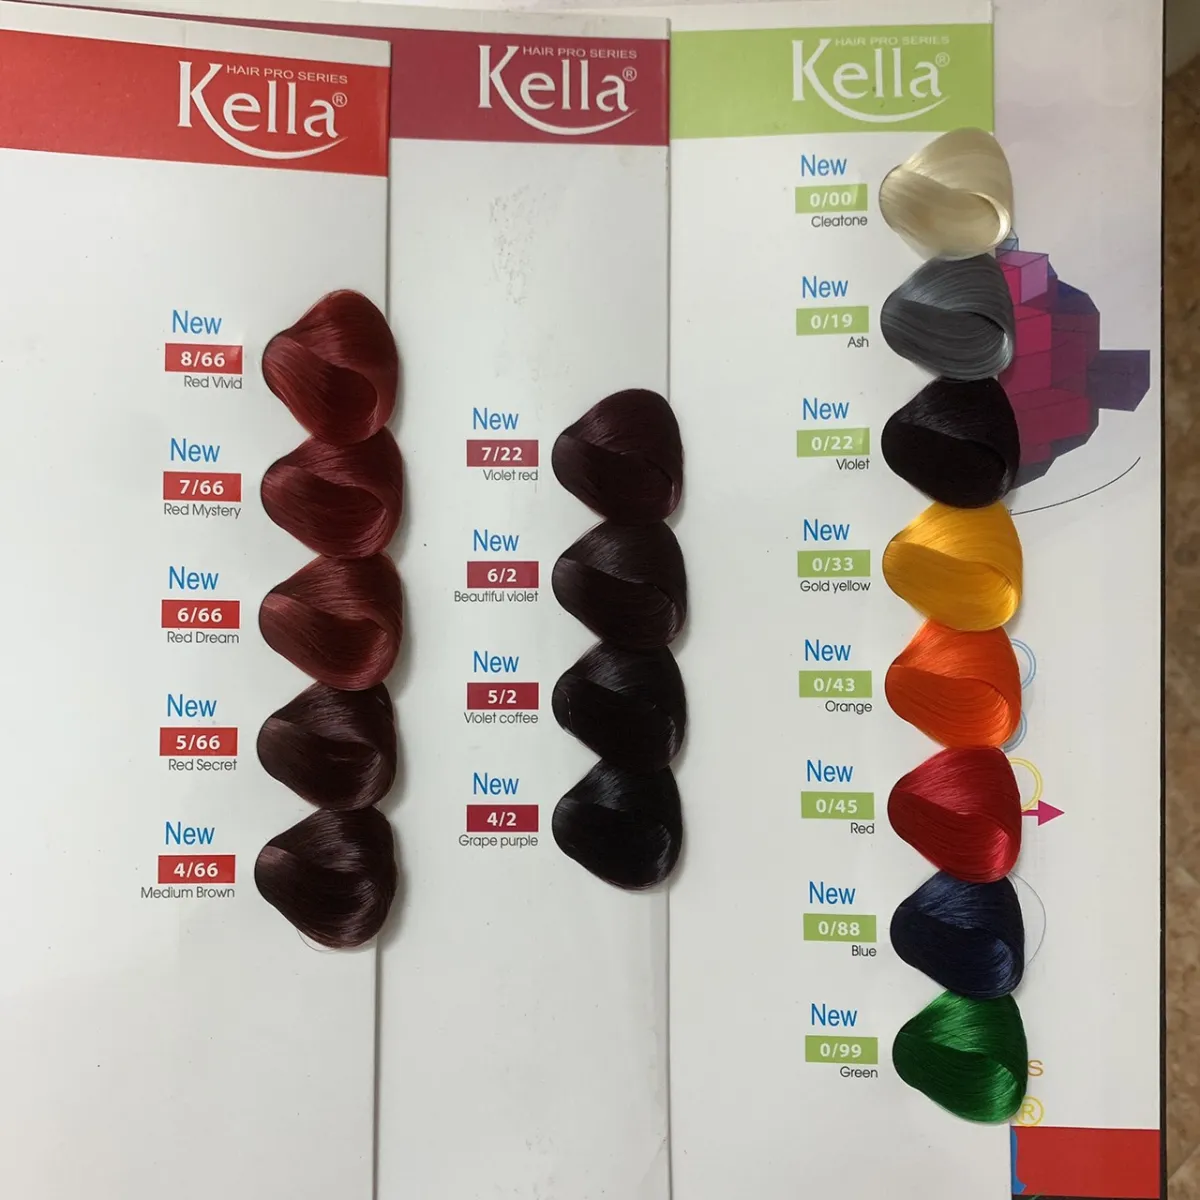 Thuốc nhuộm tóc Kella thế hệ mới đang trở thành cơn sốt trong cộng đồng thời trang. Đây là lựa chọn hoàn hảo cho những ai muốn tạo nên một diện mạo mới mẻ. Hãy xem hình ảnh liên quan để khám phá những ưu điểm nổi bật của thuốc nhuộm tóc Kella thế hệ mới.